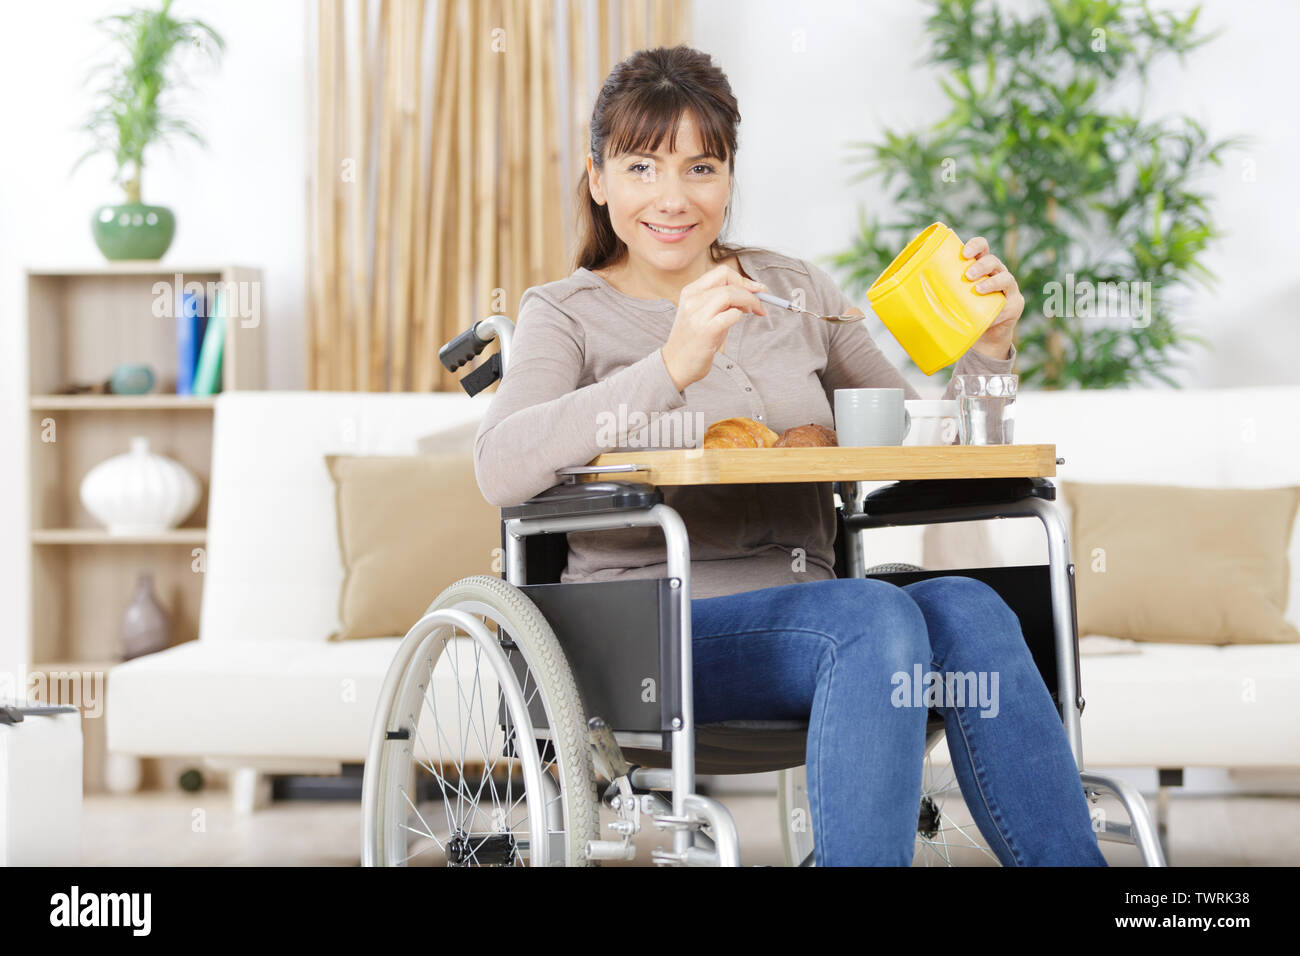 Frau im Rollstuhl hat ihr Frühstück auf einem Tablett Stockfotografie -  Alamy